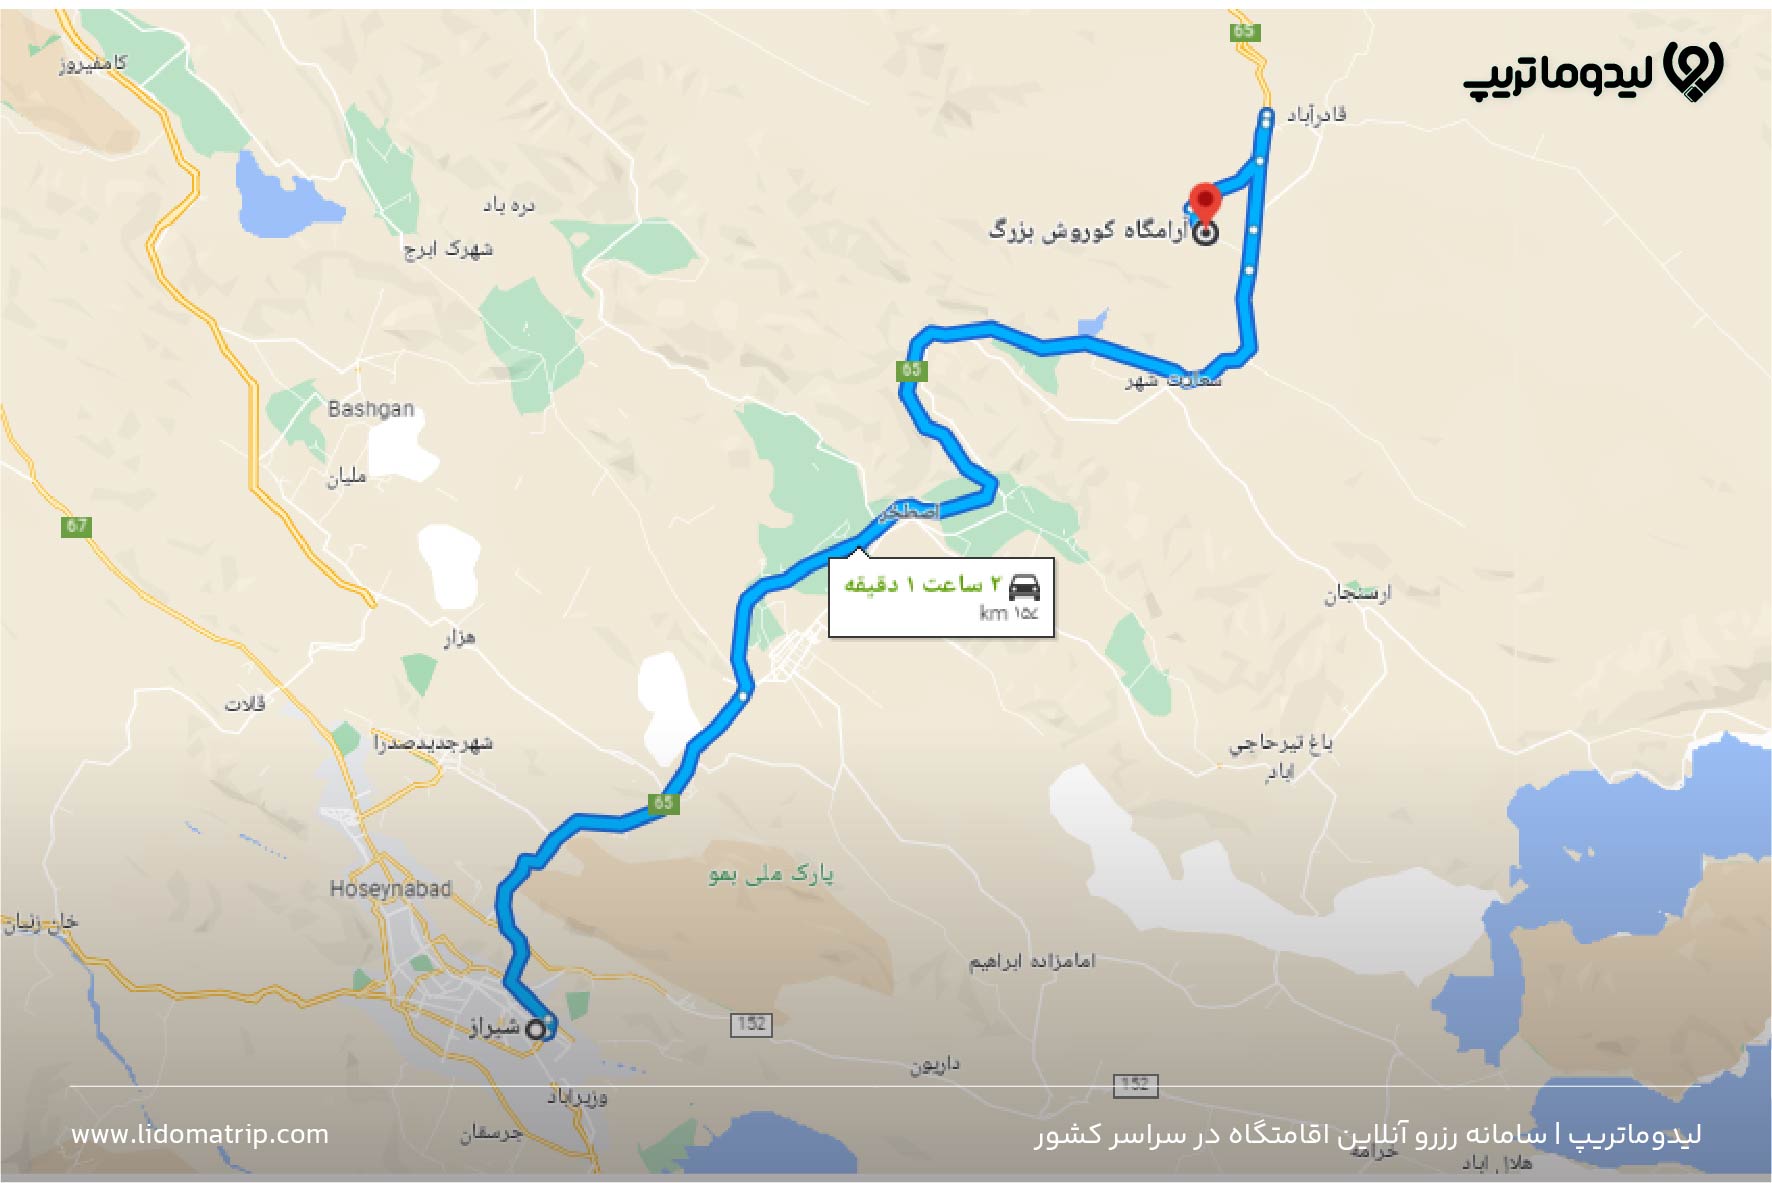 مسیر دسترسی به پاسارگاد شیراز